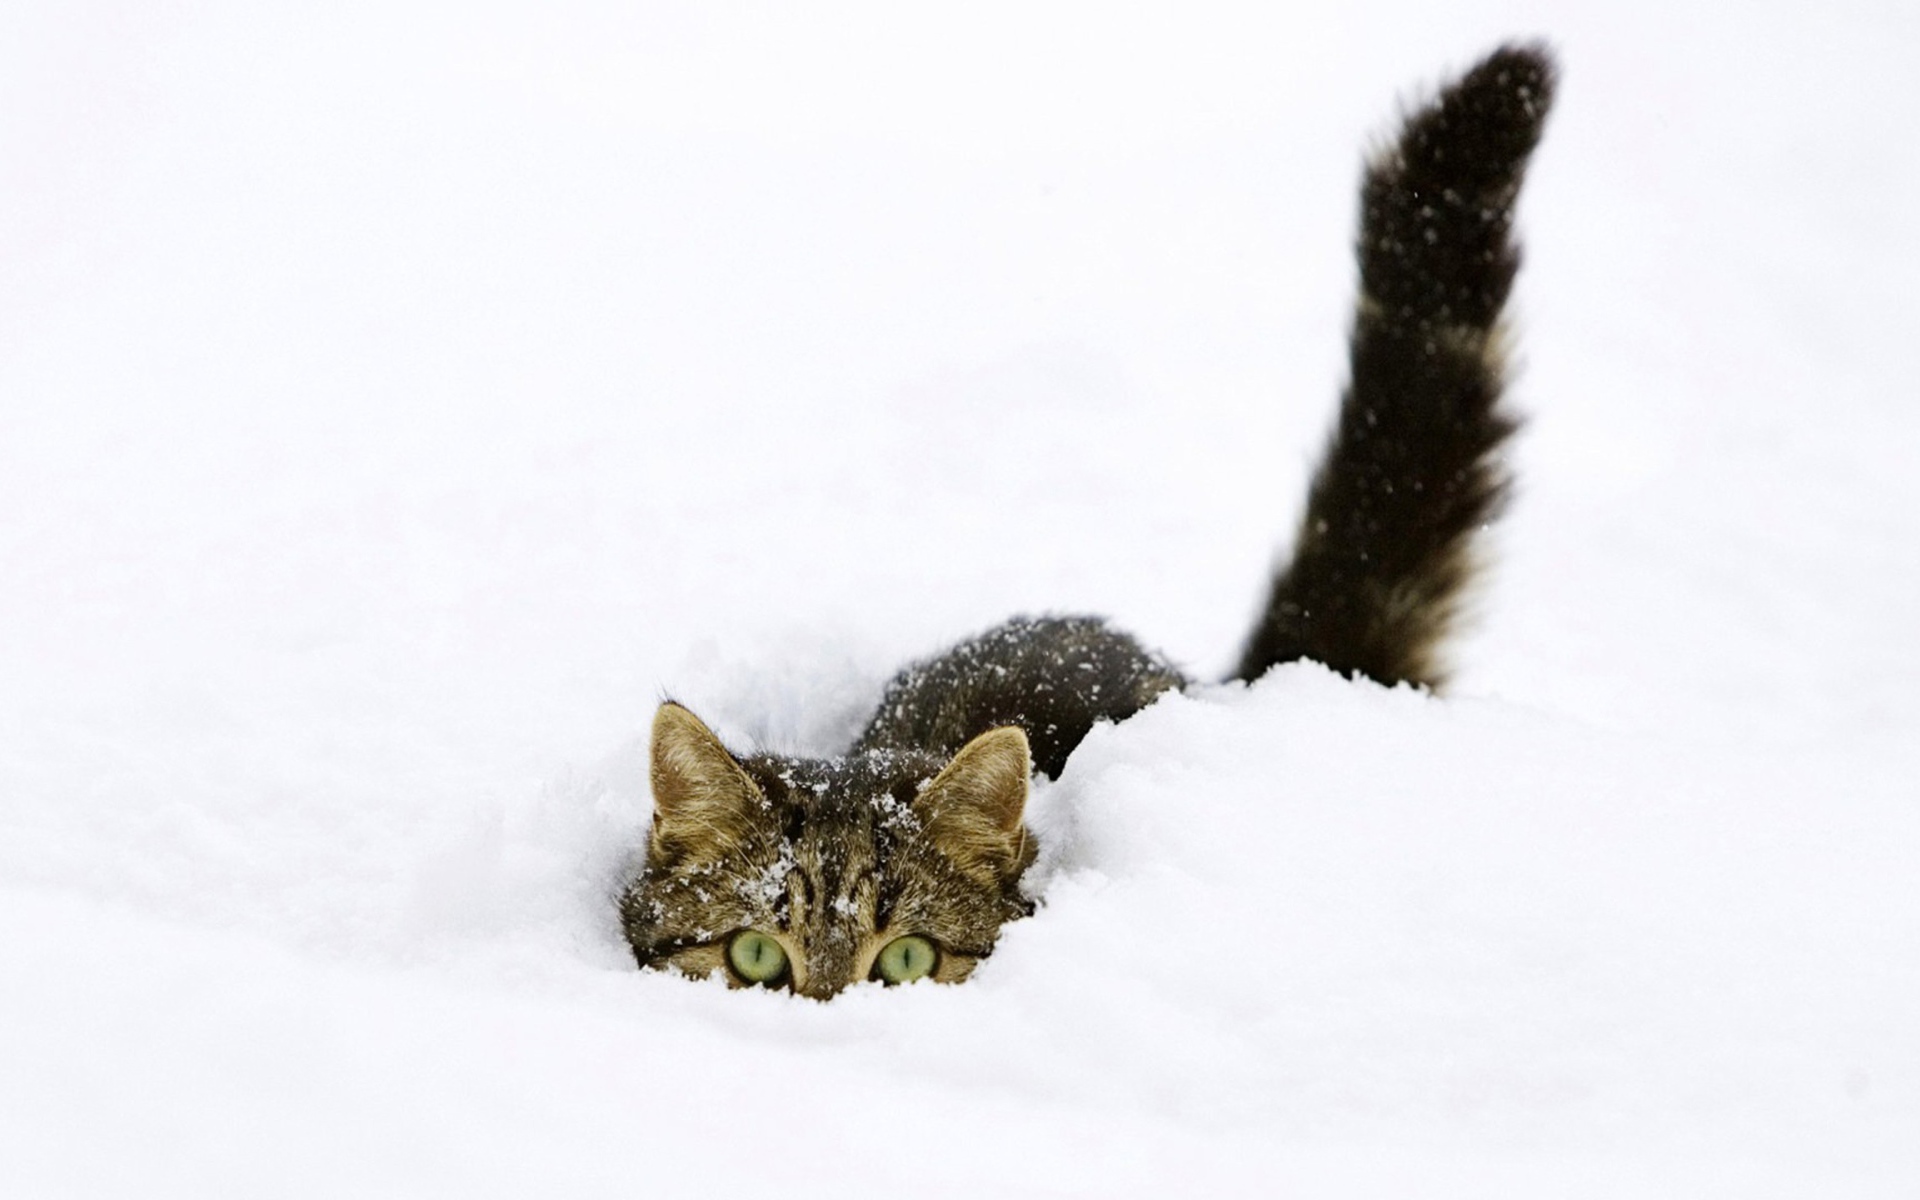 Кот сидит в снегу